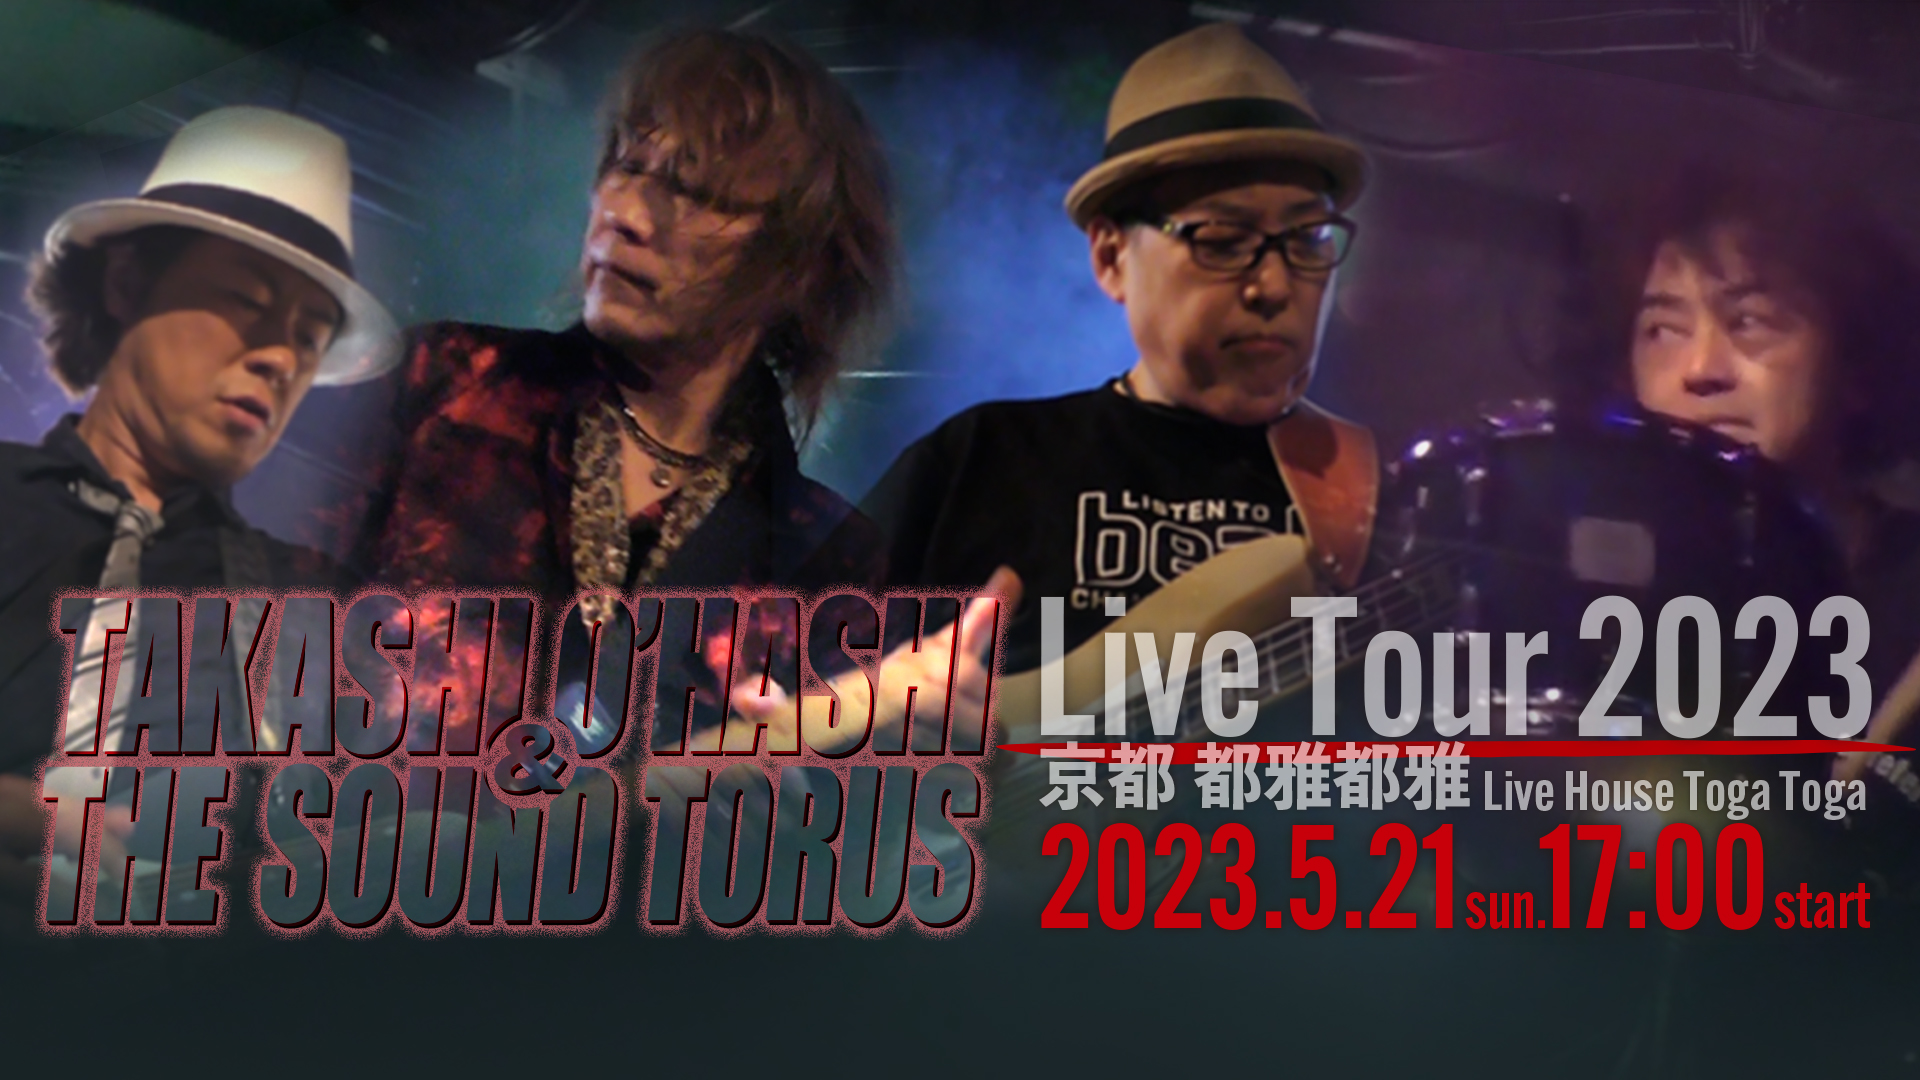 【投げ銭チケット】TAKASHI O'HASHI & The Sound Torus Live Tour 2023 at 京都 都雅都雅